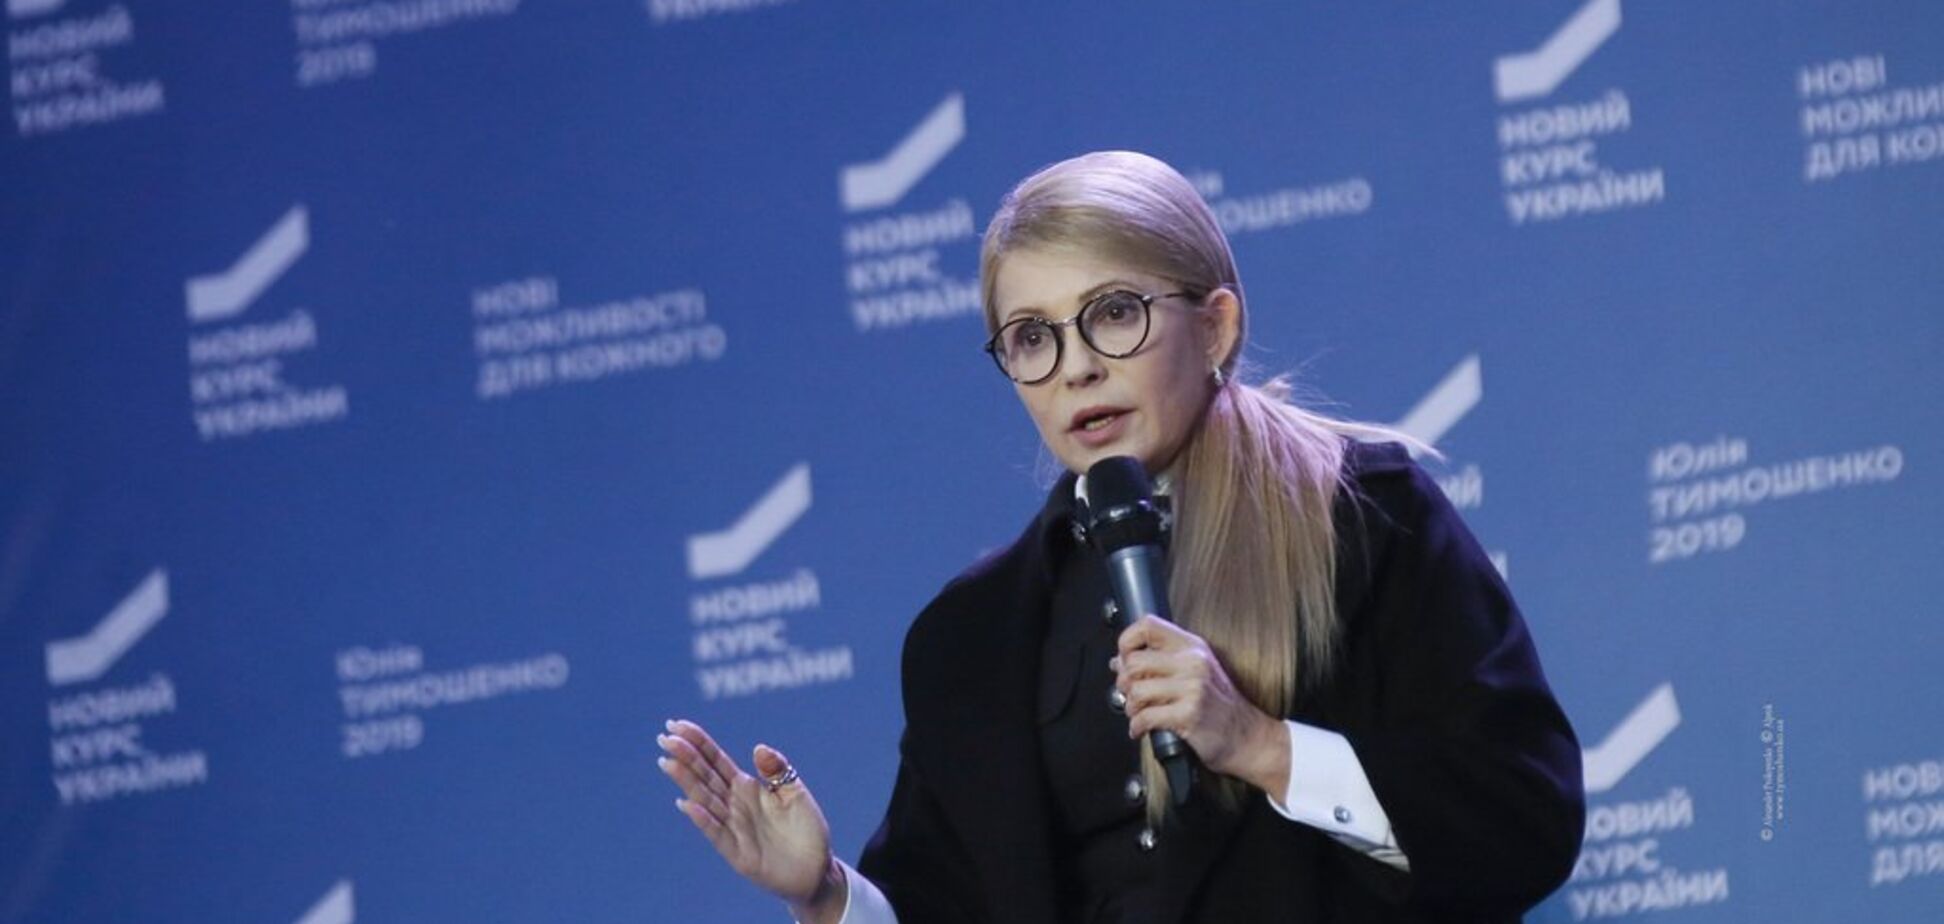 Тимошенко рассказала, в чем главный залог успеха государства